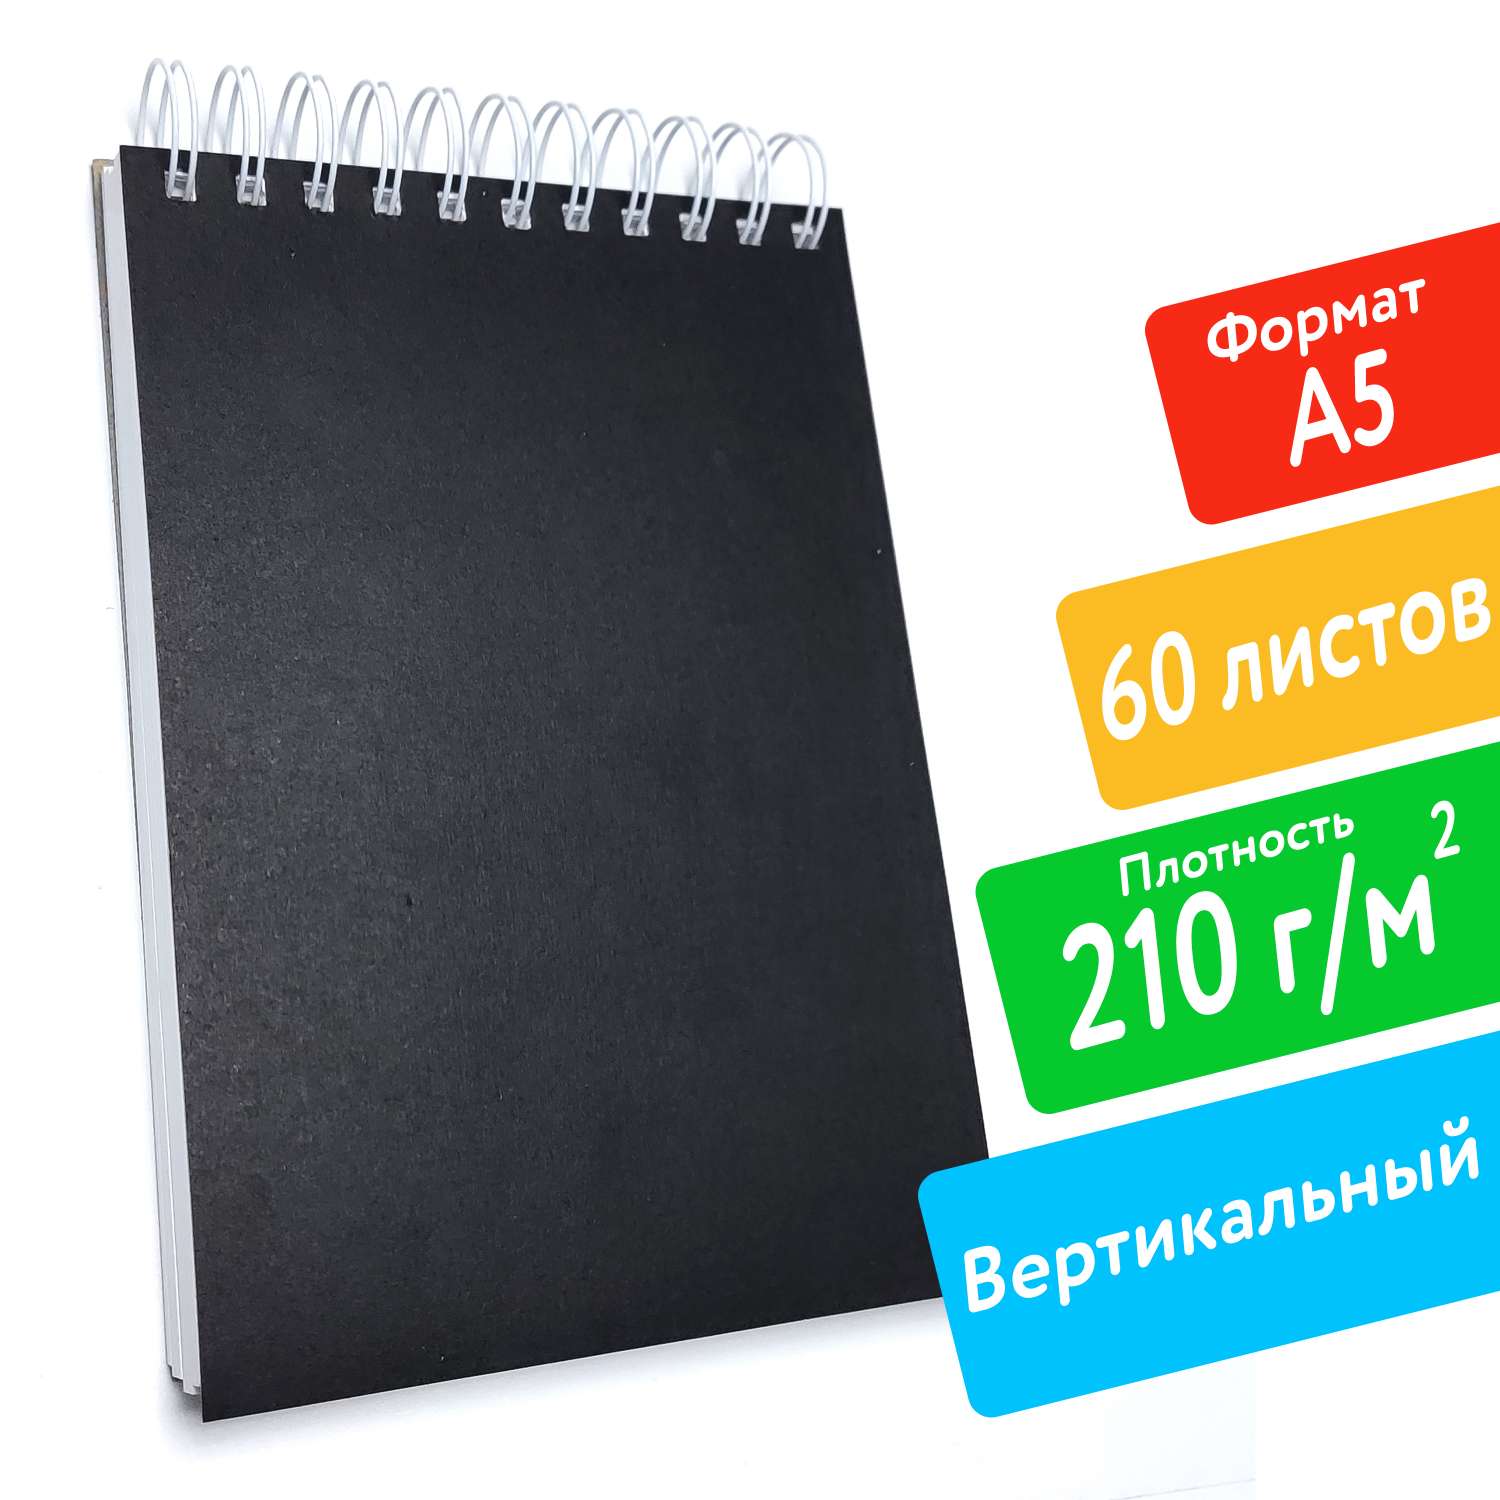 Скетчбук ПСВ А5 210грамм с черной обложкой вертикальный 60 листов - фото 2